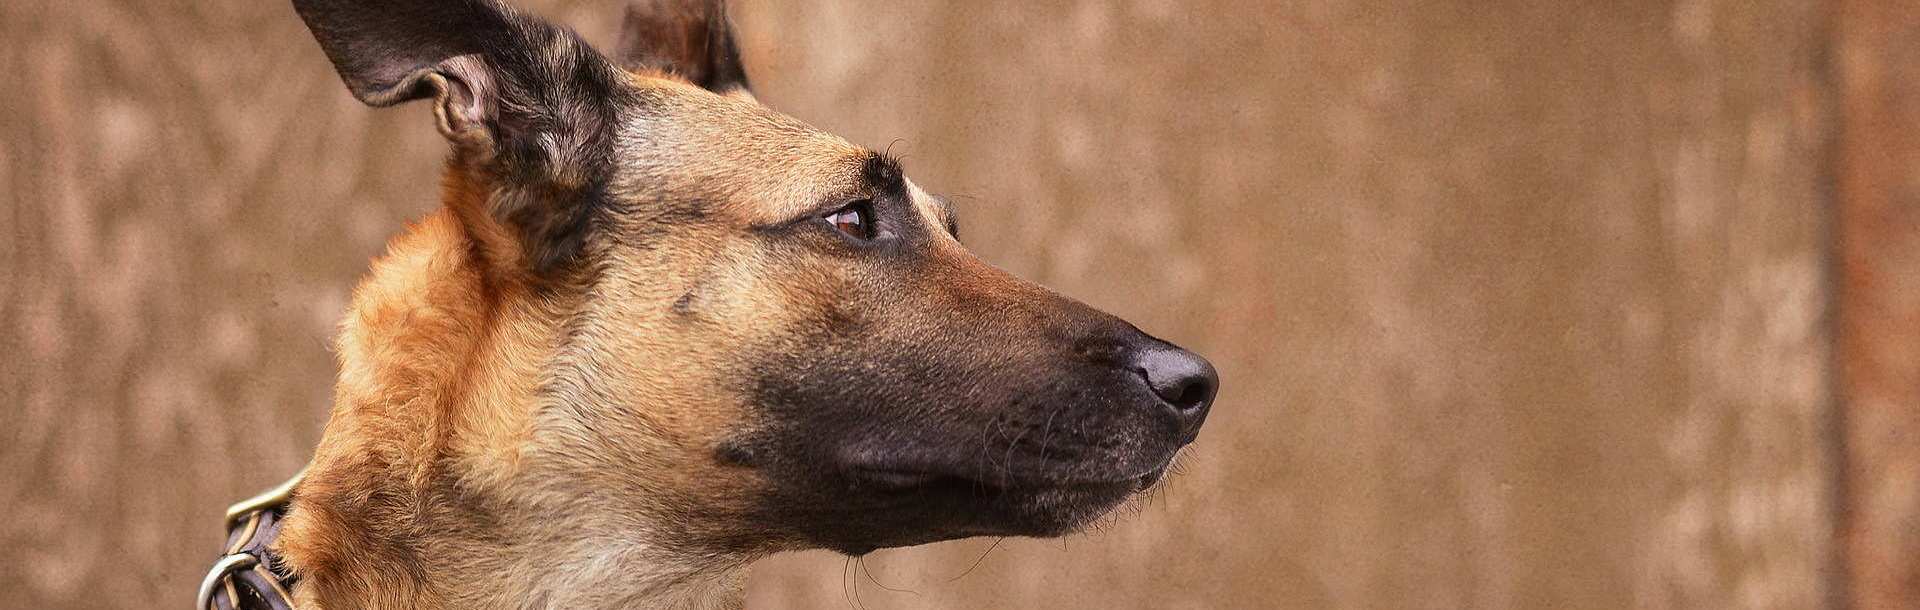 Αυτή είναι η ράτσα σκύλου που επιλέγουν ο στρατός και τα σώματα ασφαλείας – Δείτε γιατί (βίντεο)